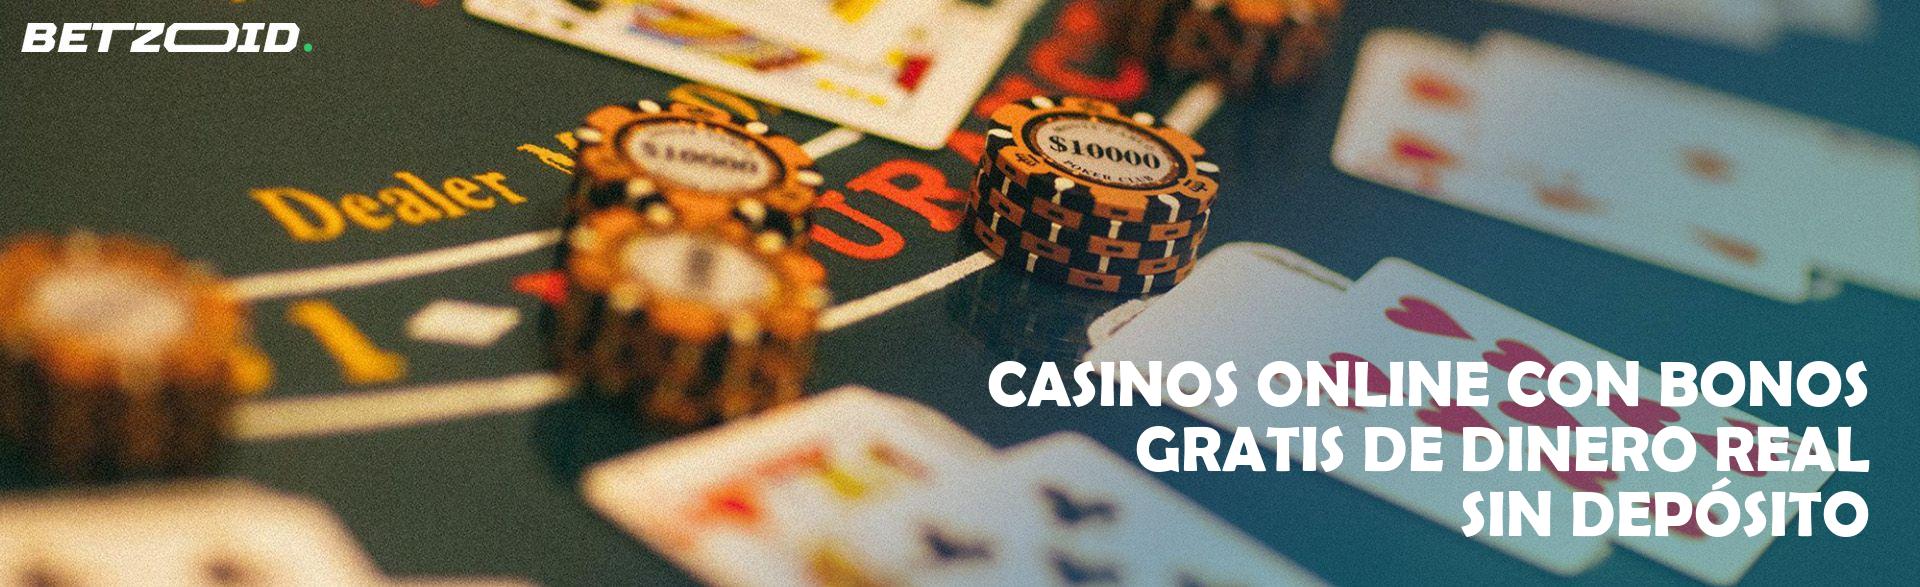 Casinos Online con Bonos Gratis de Dinero Real sin Depósito.